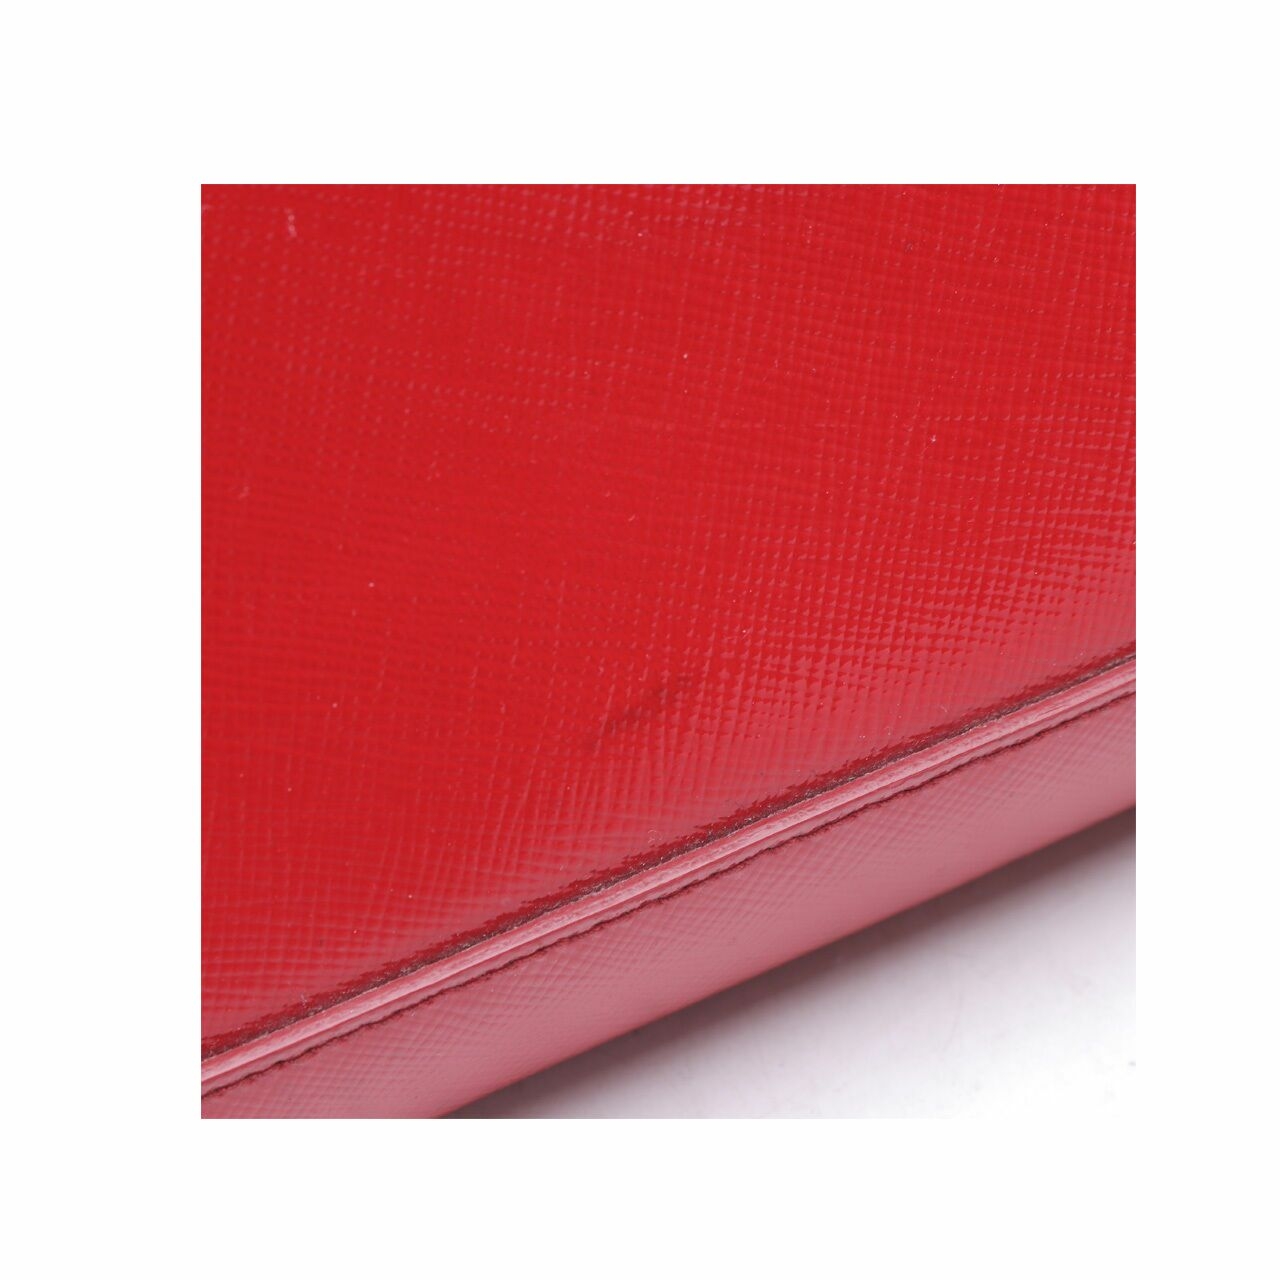 Prada Saffiano Vernic Lux Rosso Red 2way Satchel Bag